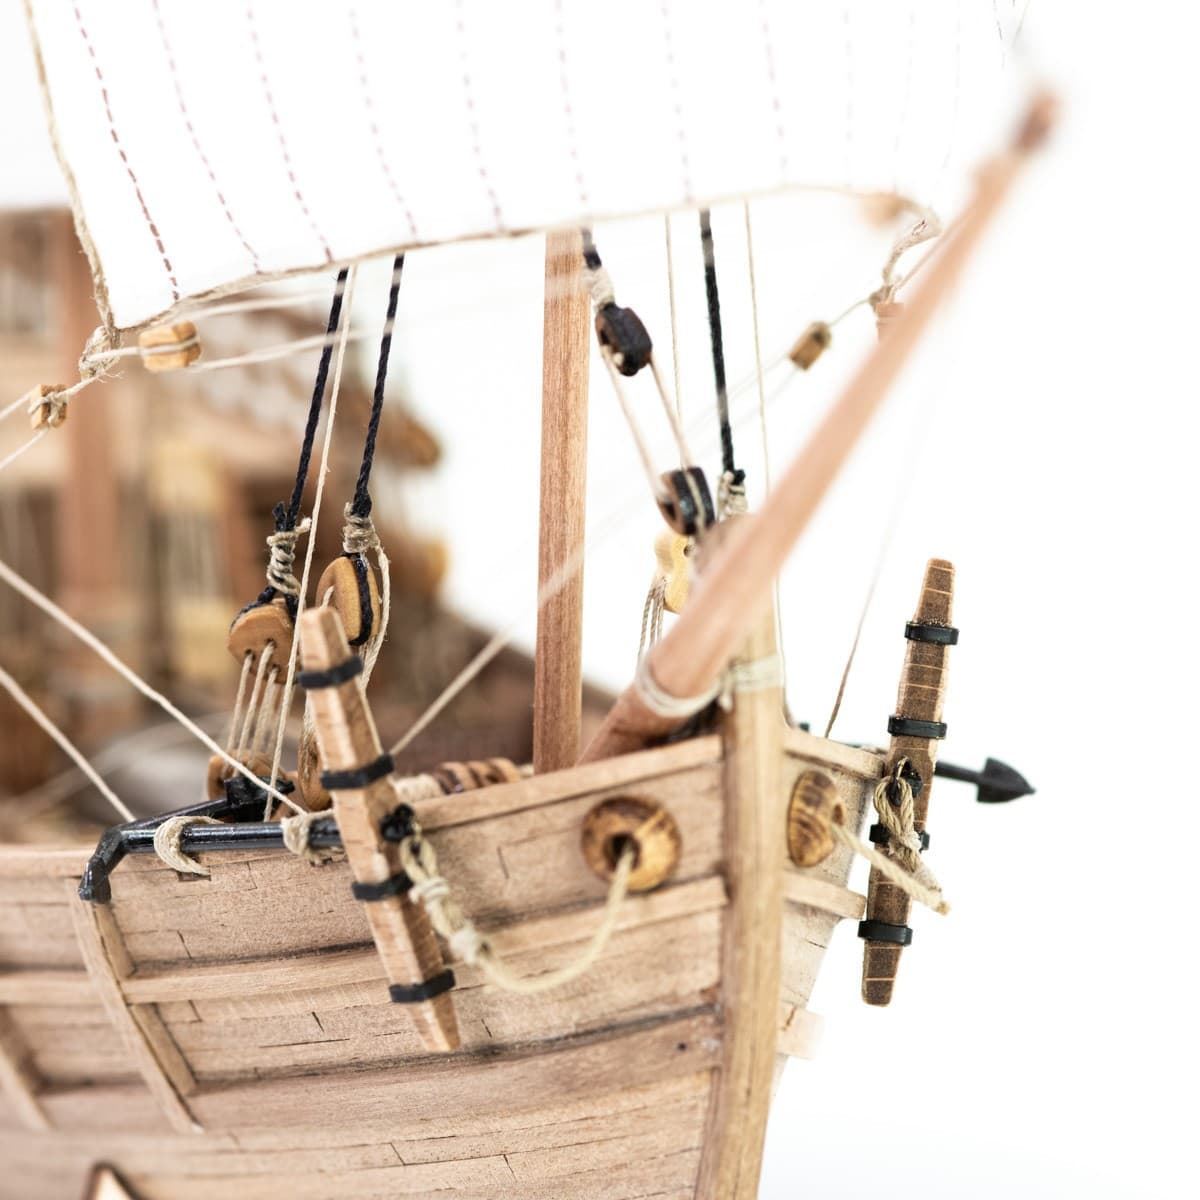 Maqueta barco de madera: Carabela Pinta - Imagen 5